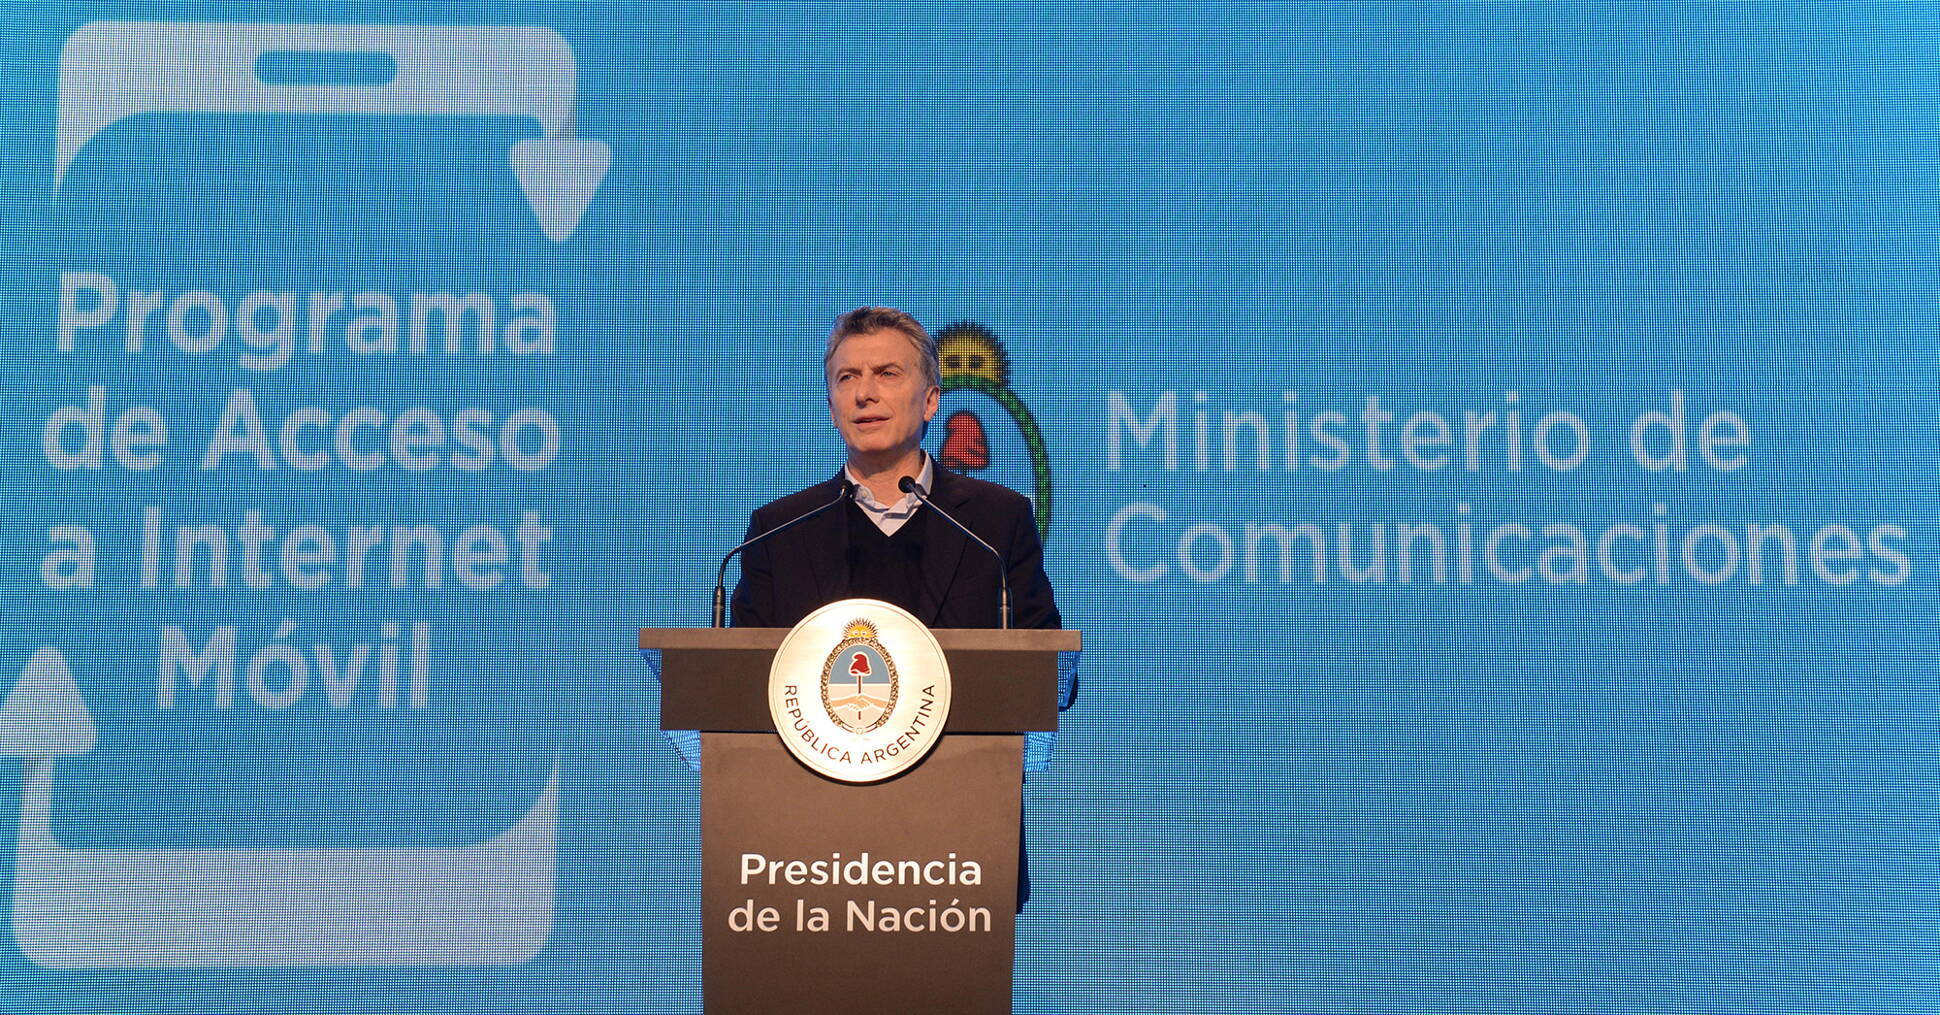 El Presidente presentó el Programa de Acceso a Internet Móvil